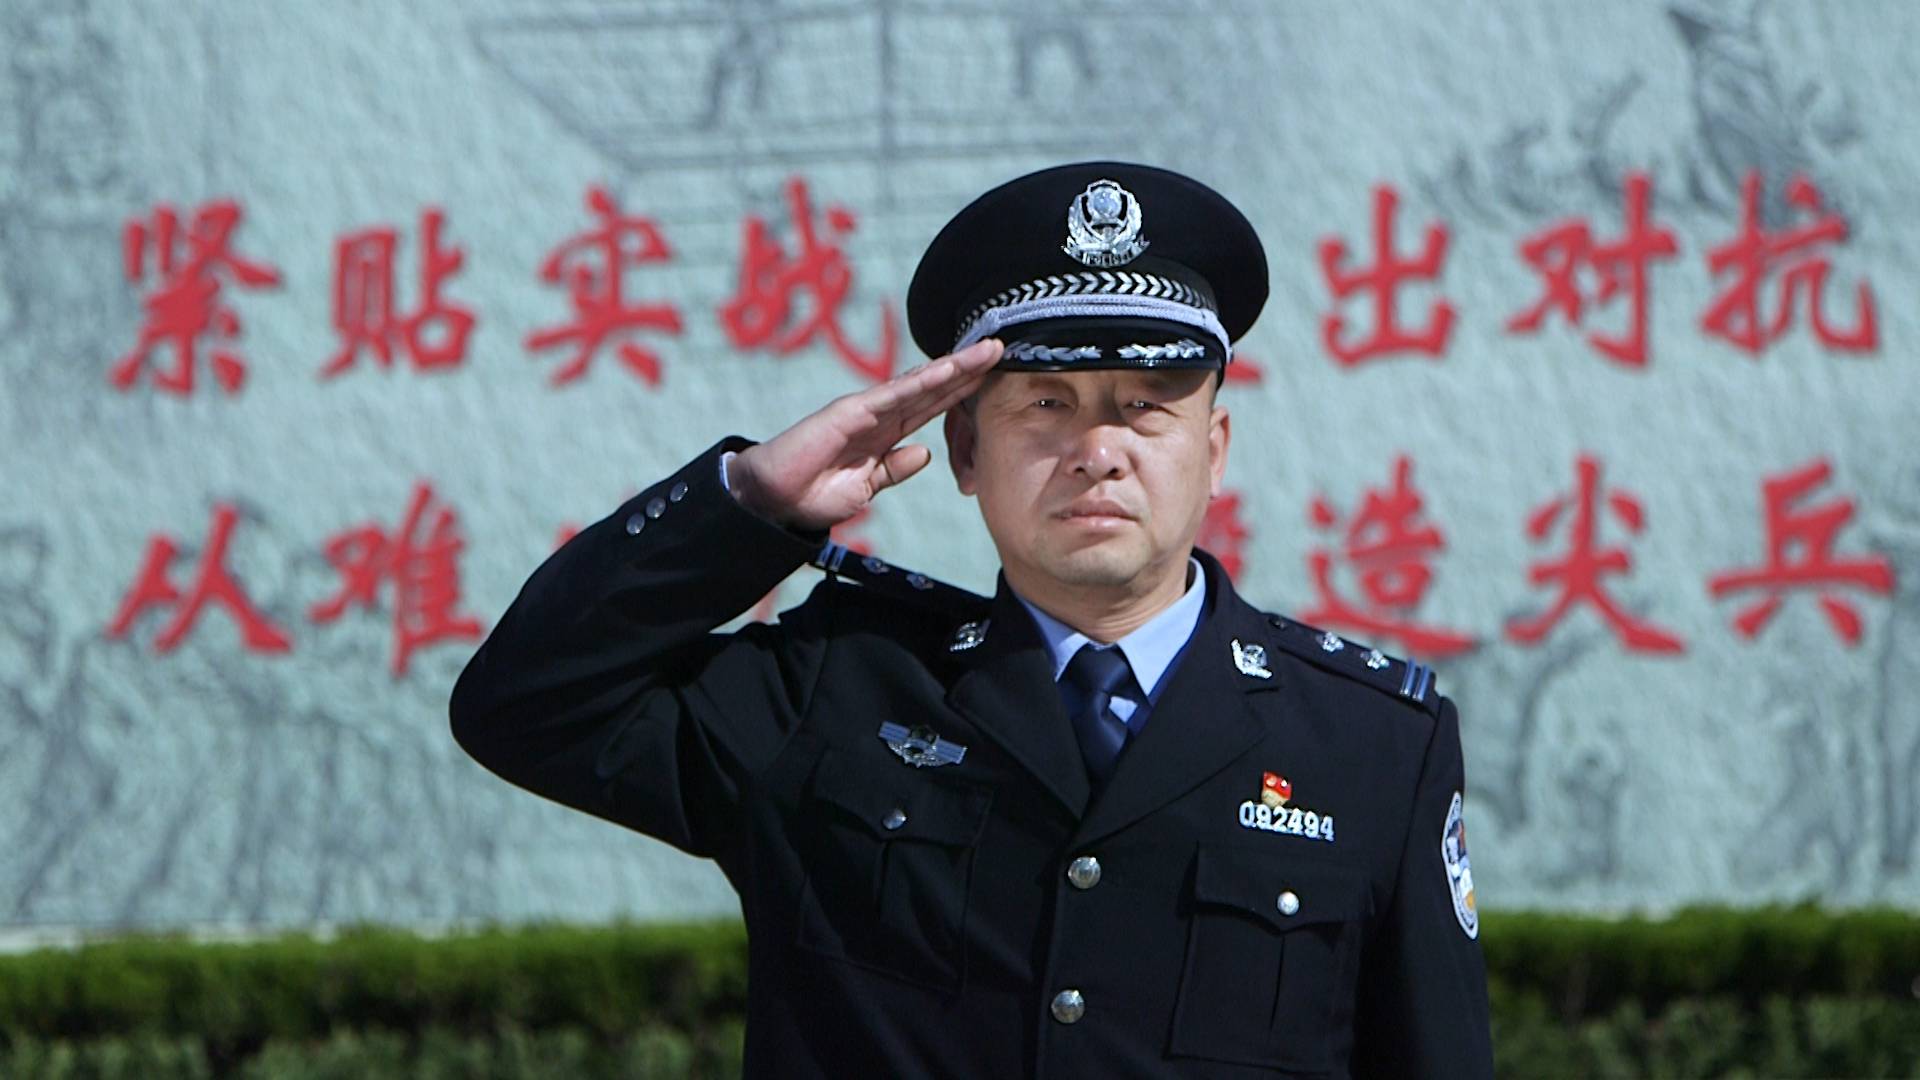 齐鲁最美警察丨徐胜利： 他的名字是全省乃至全国都叫得响的“拆弹品牌”